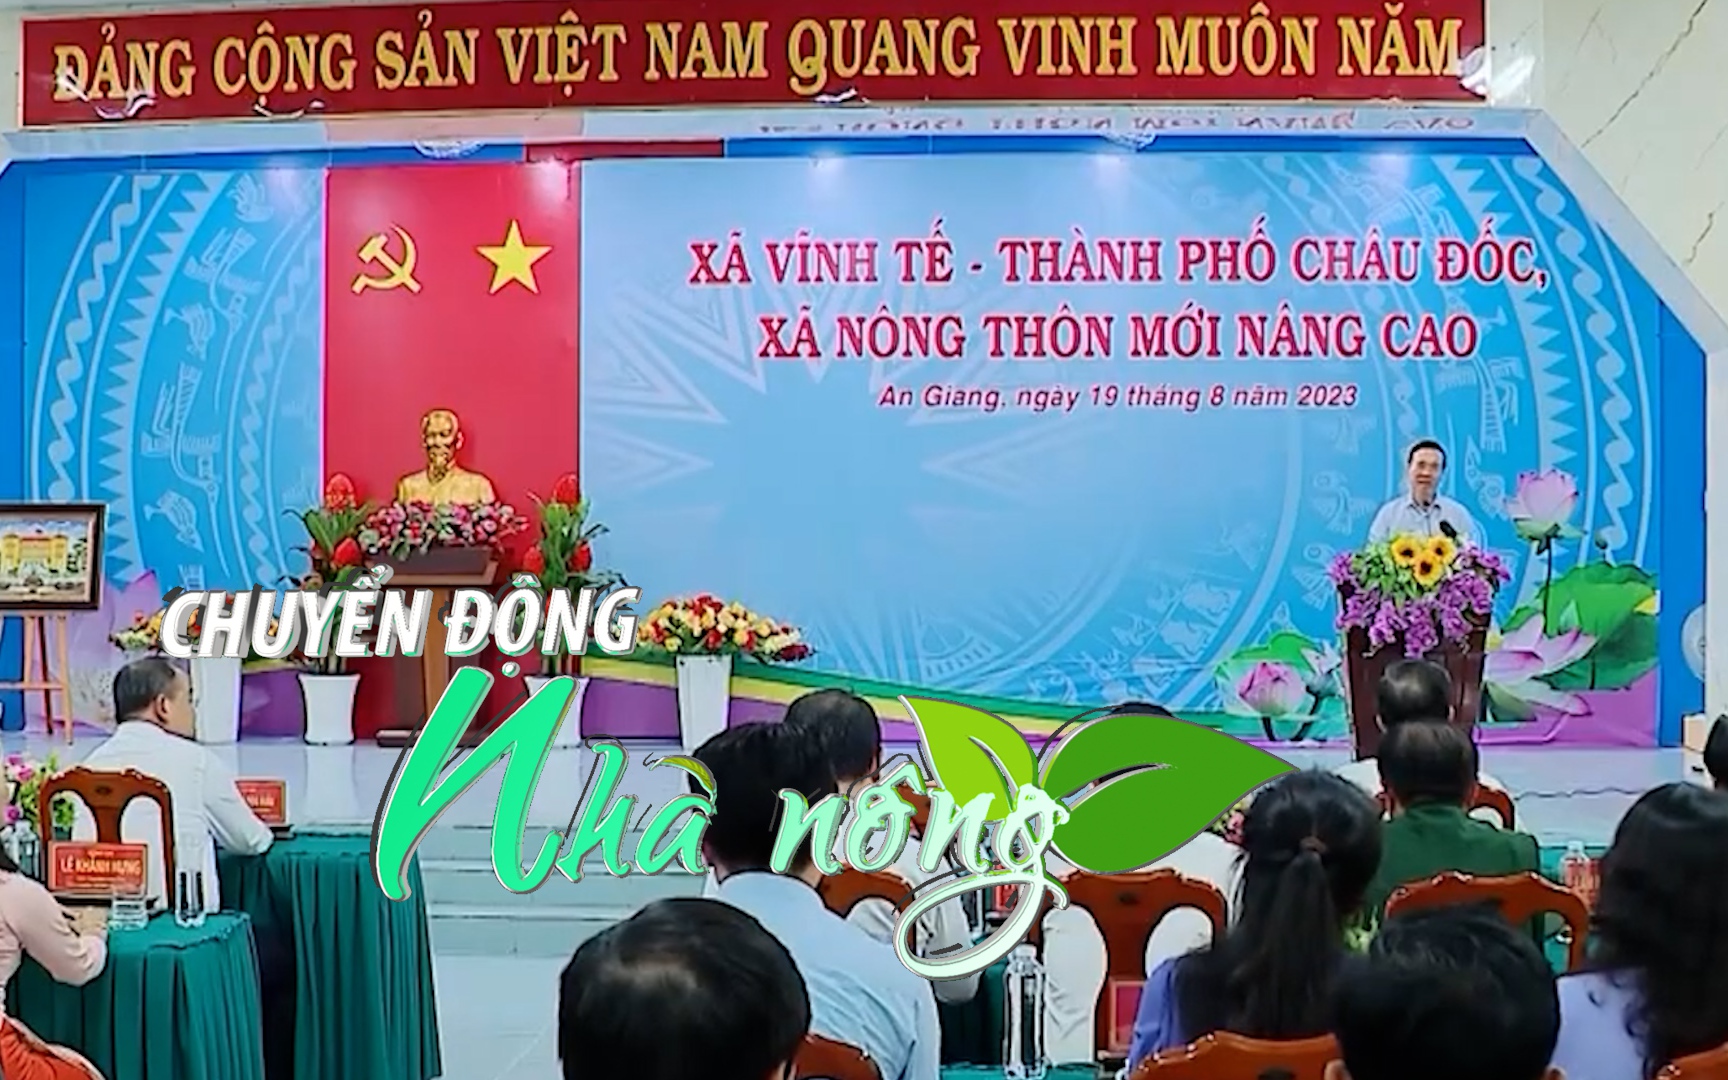 Chuyển động Nhà nông 20/8: Chủ tịch nước thăm xã nông thôn mới nâng cao tại An Giang